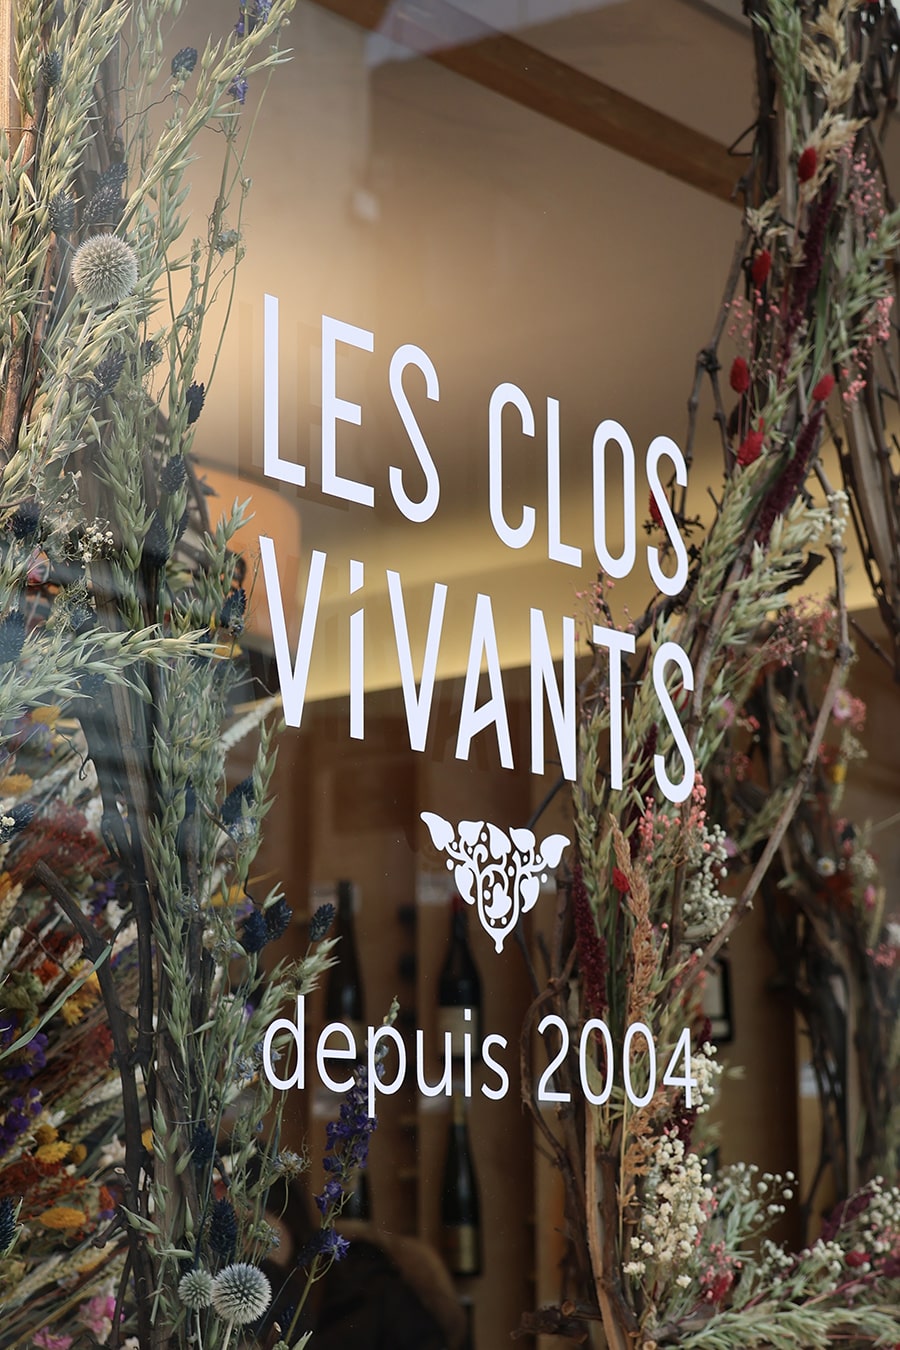 vins Les Clos Vivants